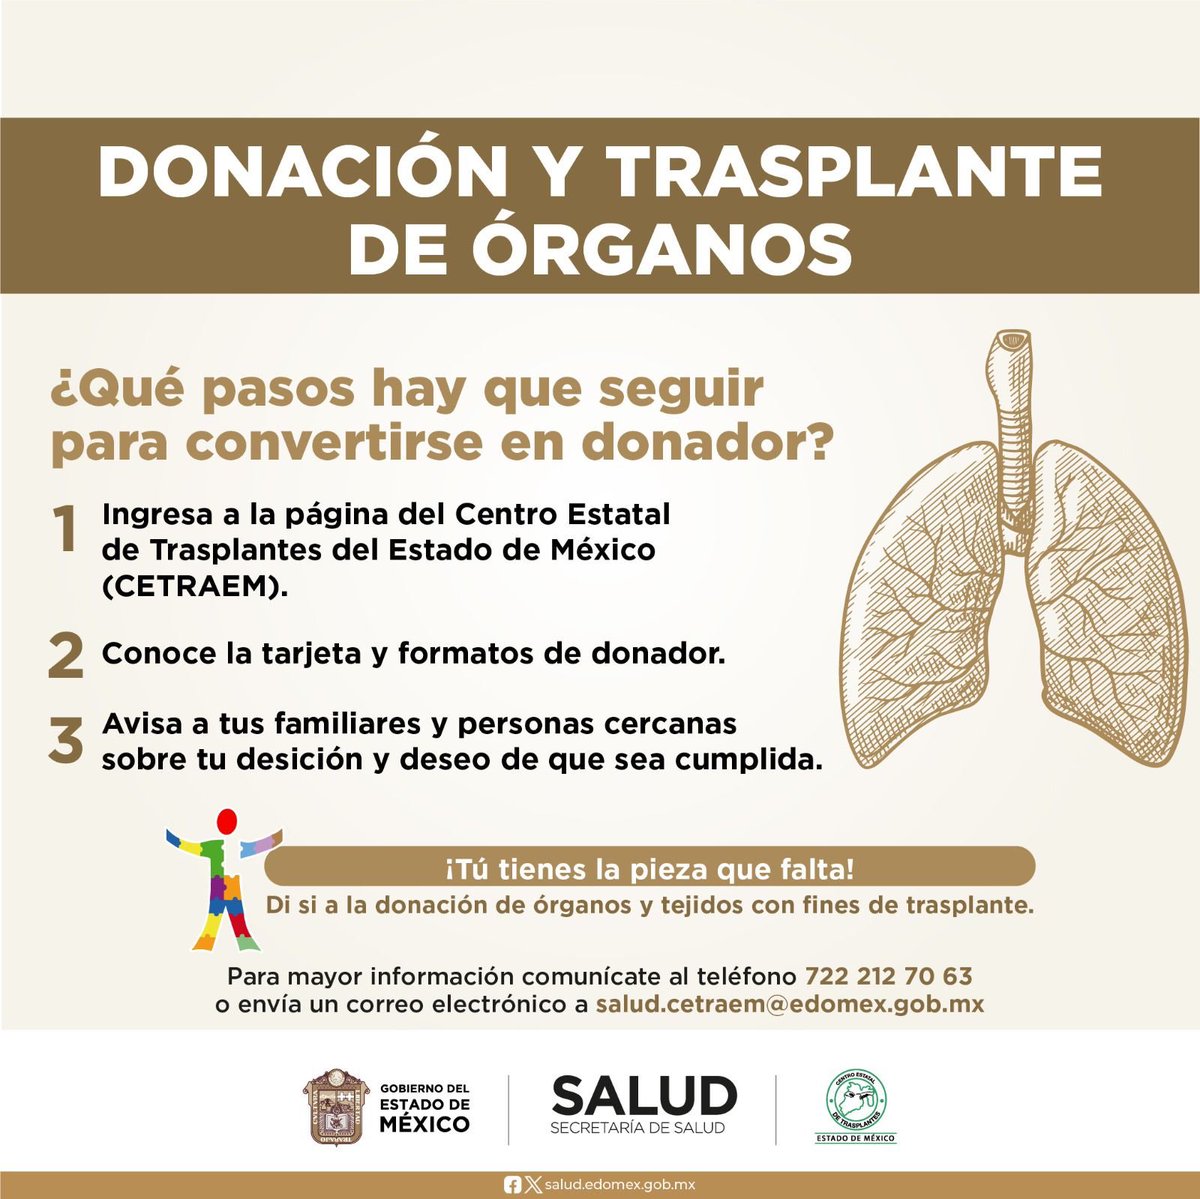 ¡La donación altruista de órganos puede salvar hasta 7 vidas! 
Conoce los requisitos y dale esperanza a pacientes que necesitan de un trasplante ingresando a: 
cetraem.edomex.gob.mx
#DonarÓrganosEsDonarVida
#Cetraem
@SaludEdomex